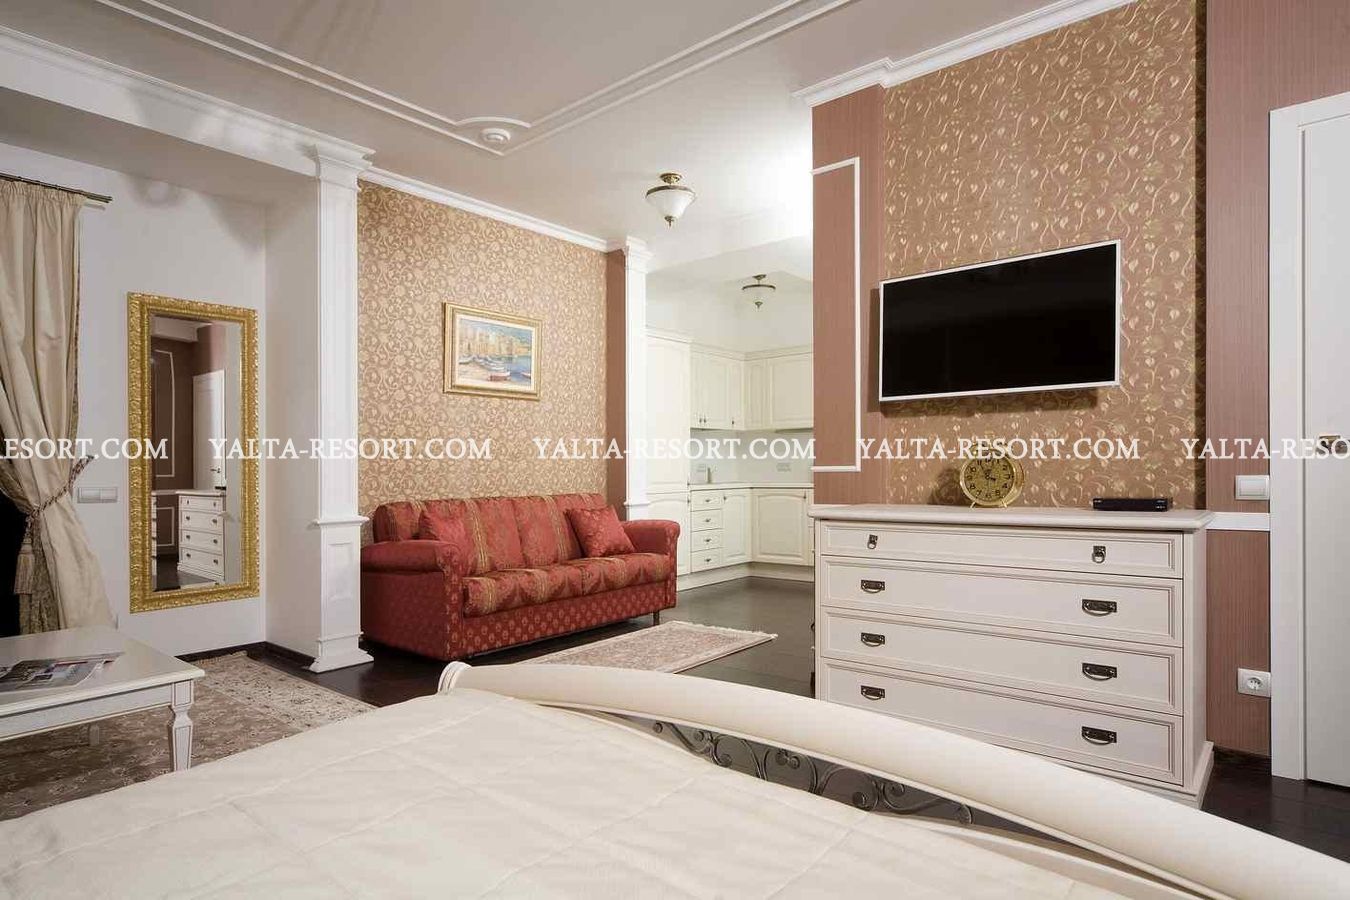 Продажа четырехкомнатной квартиры в центре Ялты